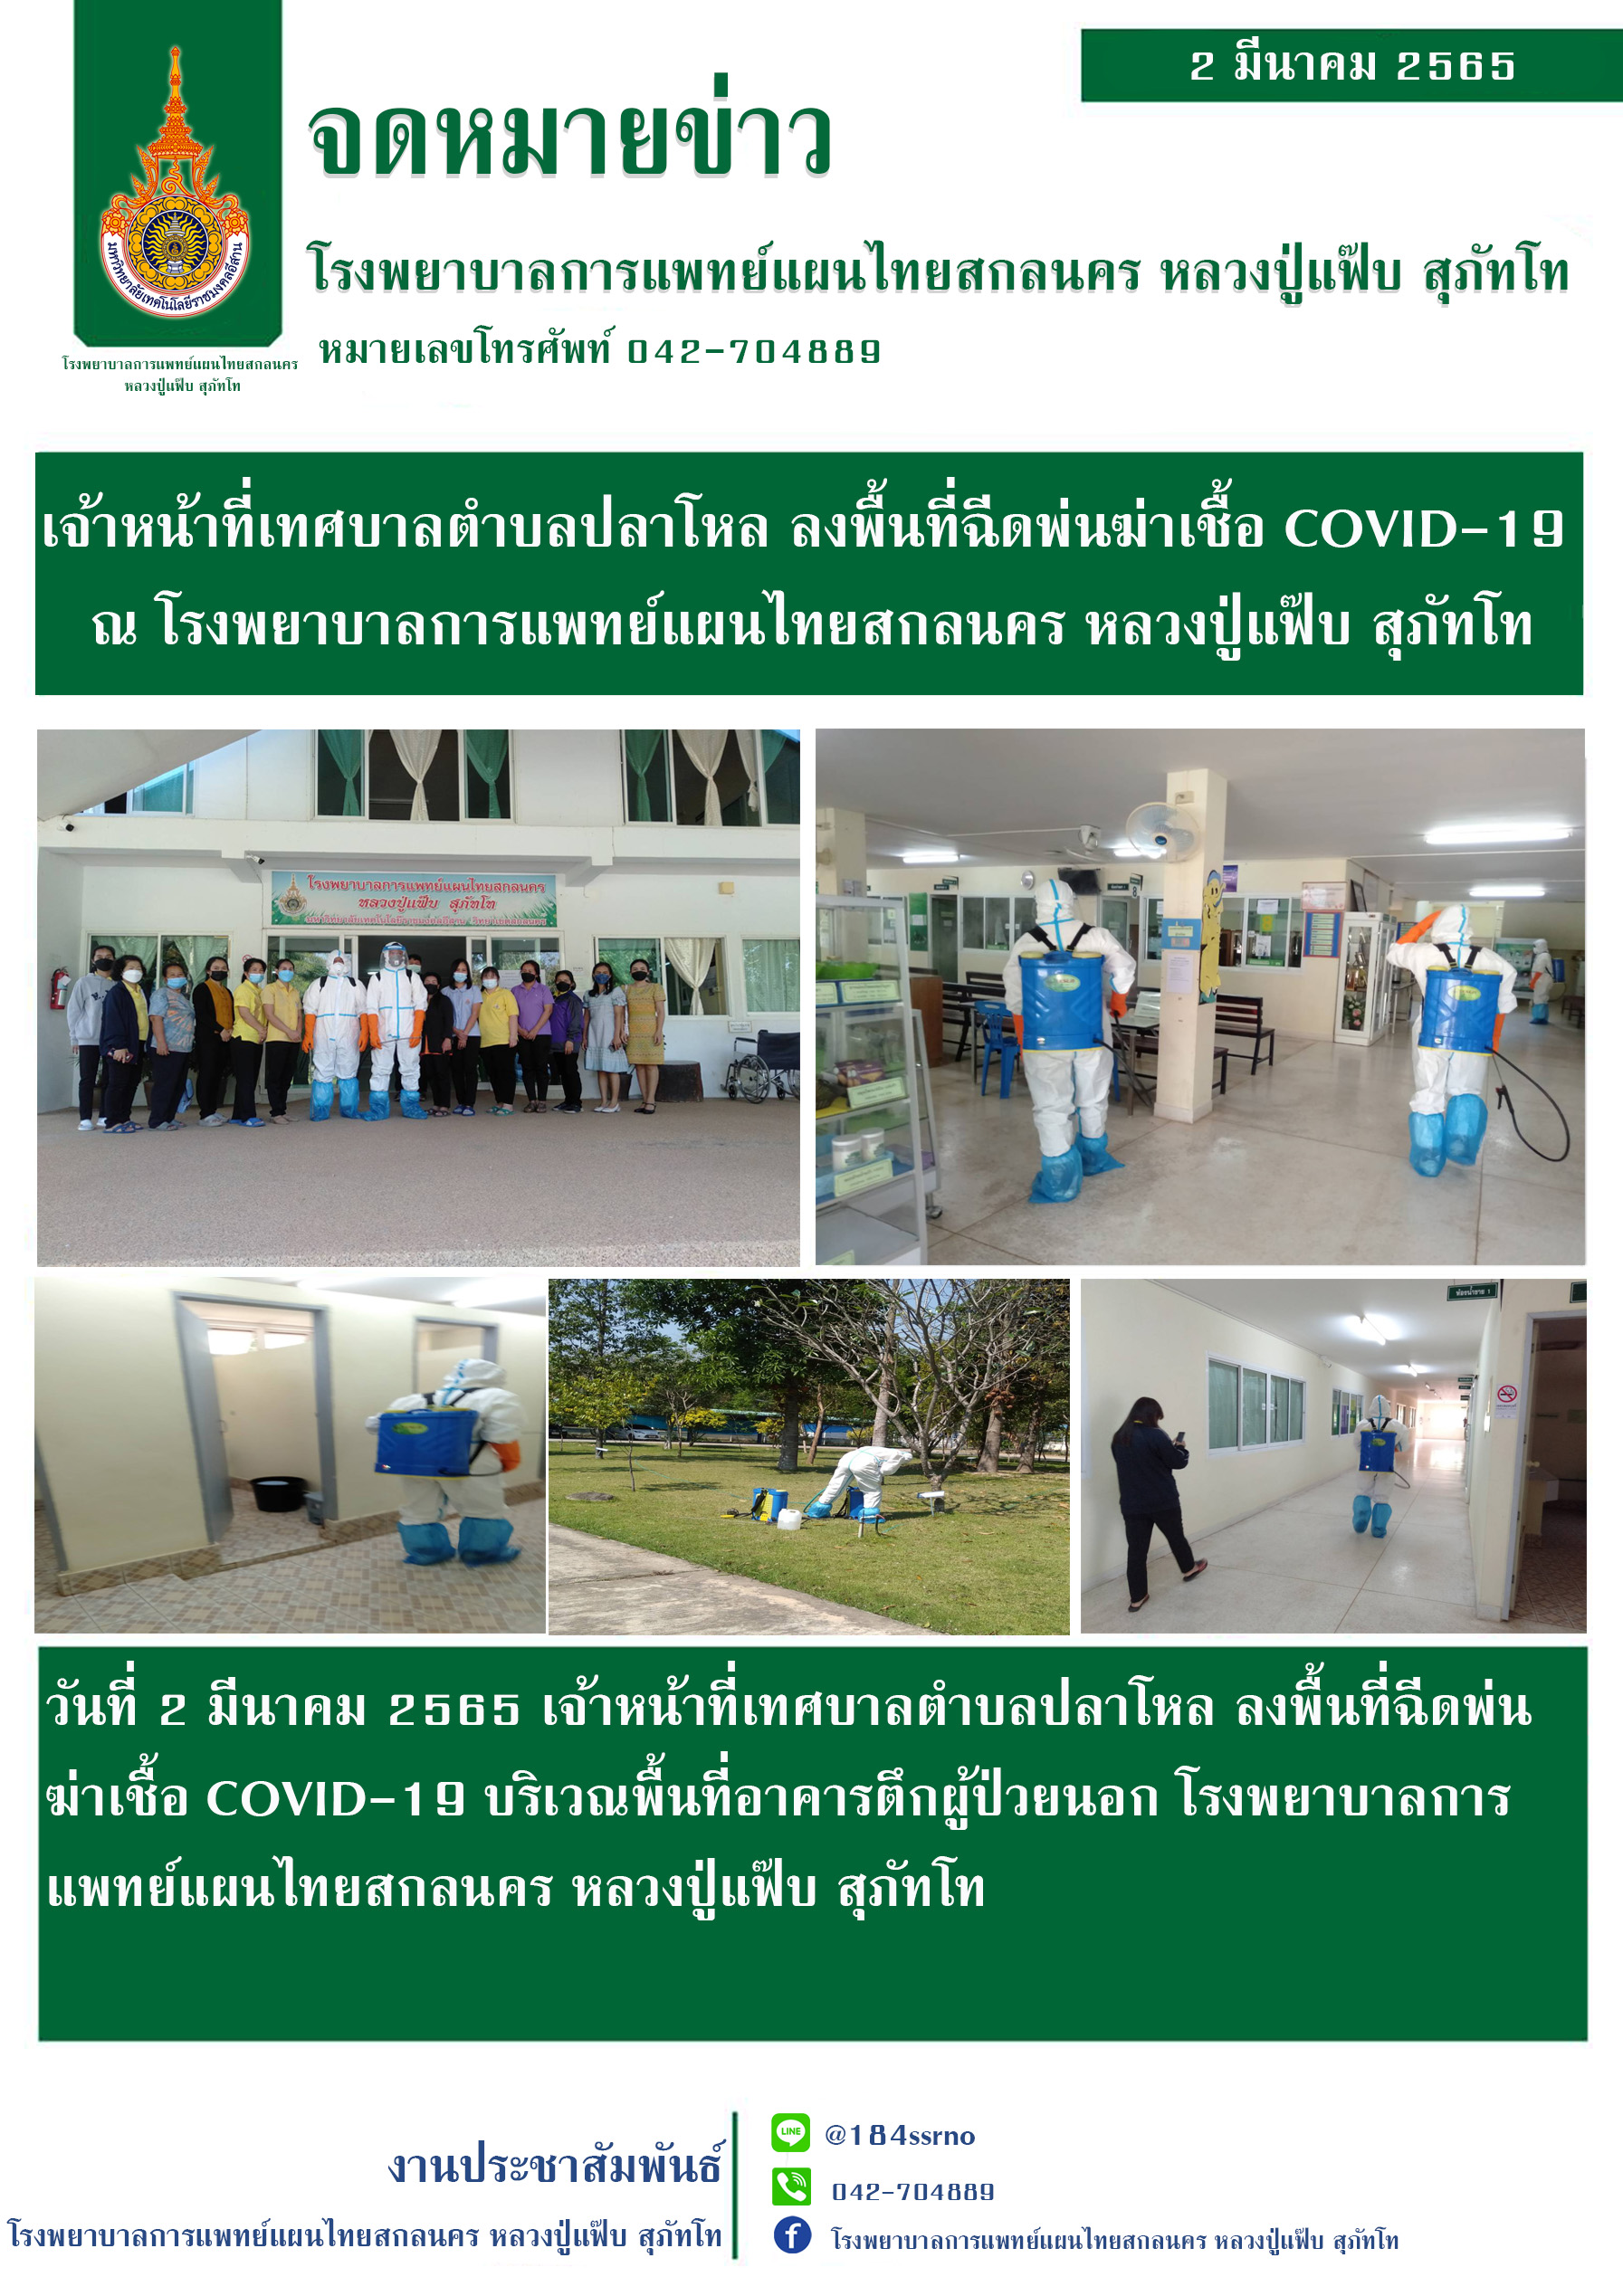 เจ้าหน้าที่เทศบาลตำบลปลาโหล ลงพื้นที่ฉีดพ่นฆ่าเชื้อ COVID-19 บริเวณตึกผู้ป่วยนอก โรงพยาบาลการแพทย์แผนไทยสกลนคร หลวงปู่แฟ๊บ สุภัทโท